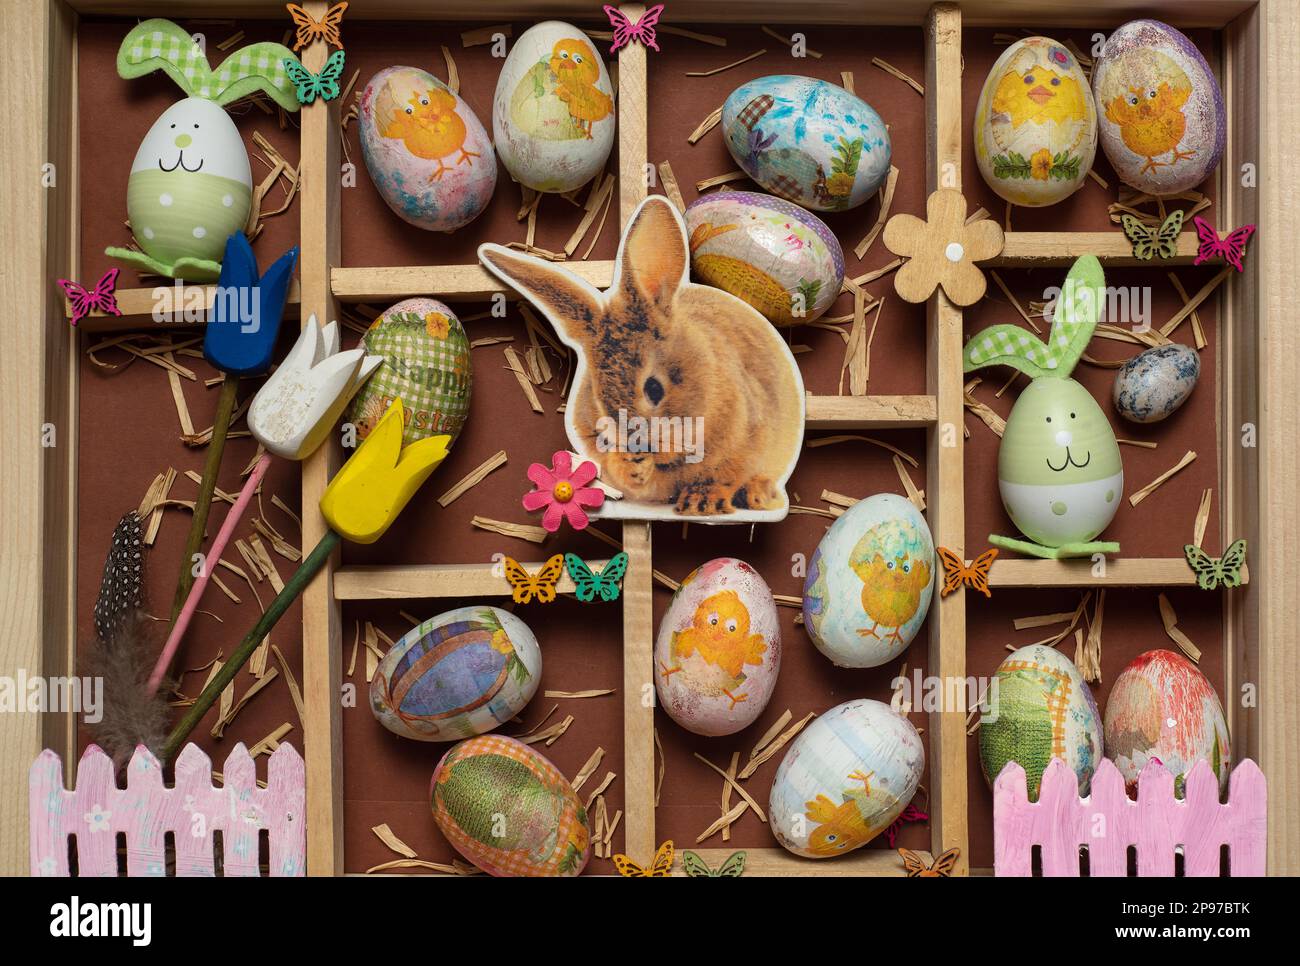 Coffret cadeau en bois de fête avec décoration de Pâques - œufs de Pâques, biscuits, lapins, carottes, bonbons et symboles de fête - vue sur le dessus Banque D'Images